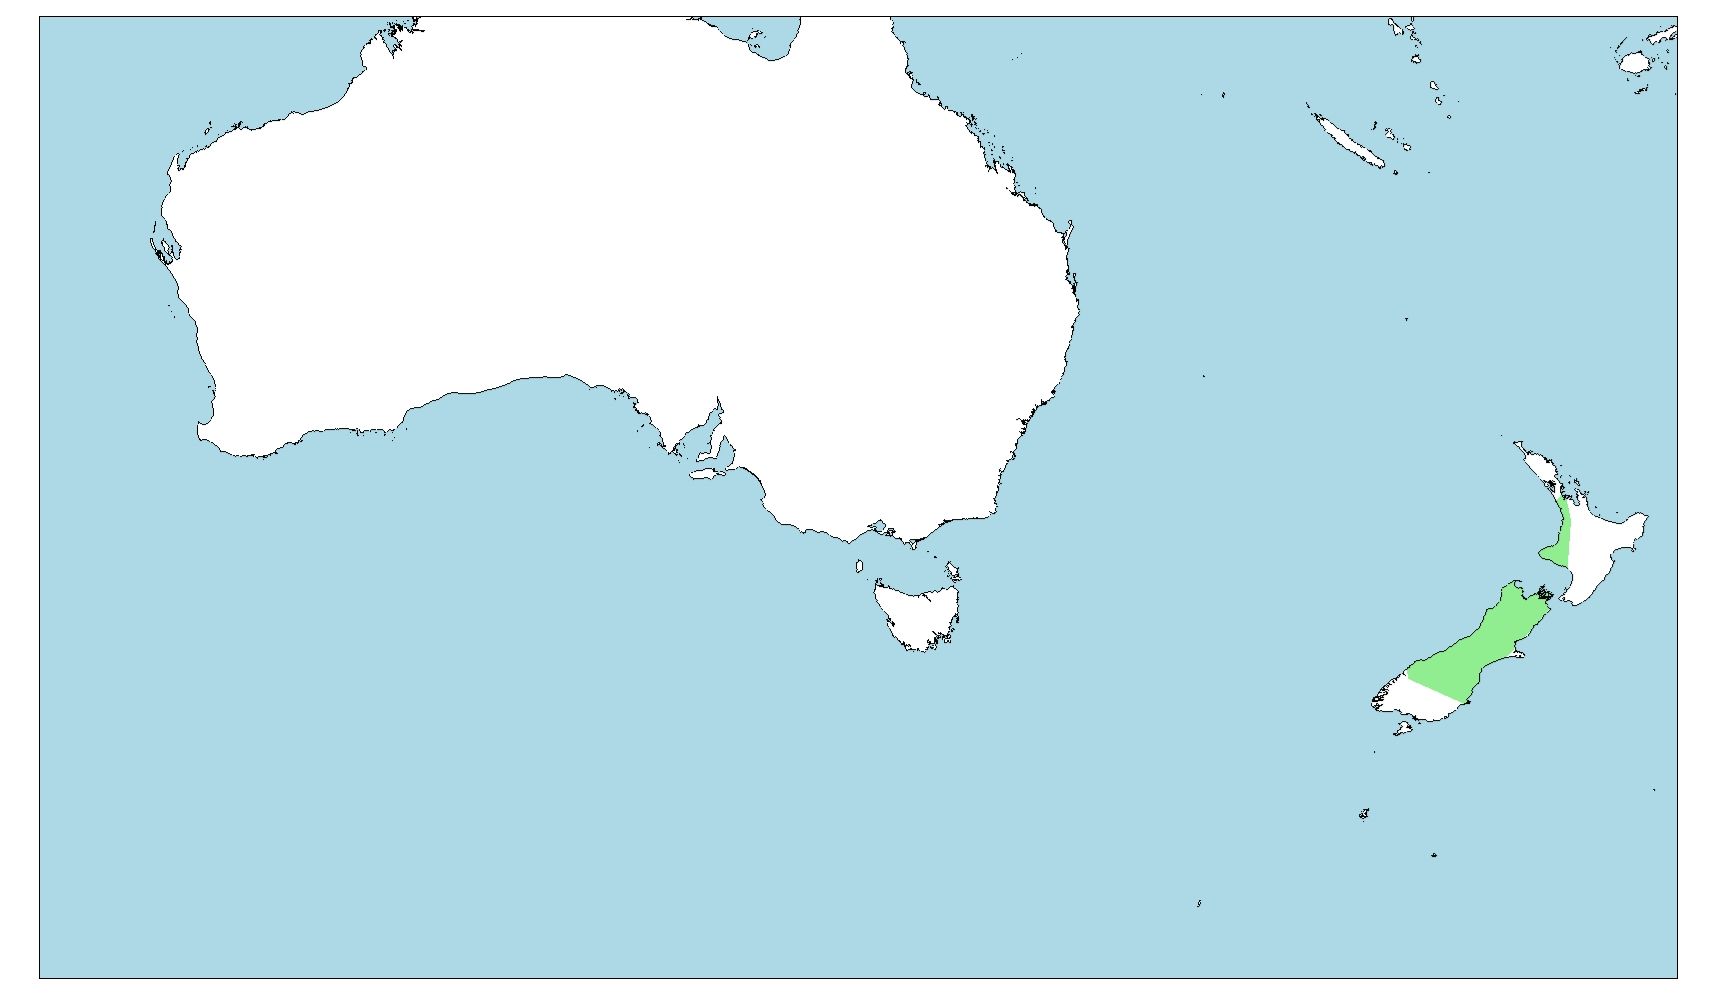 Distribución del kiwi moteado menor